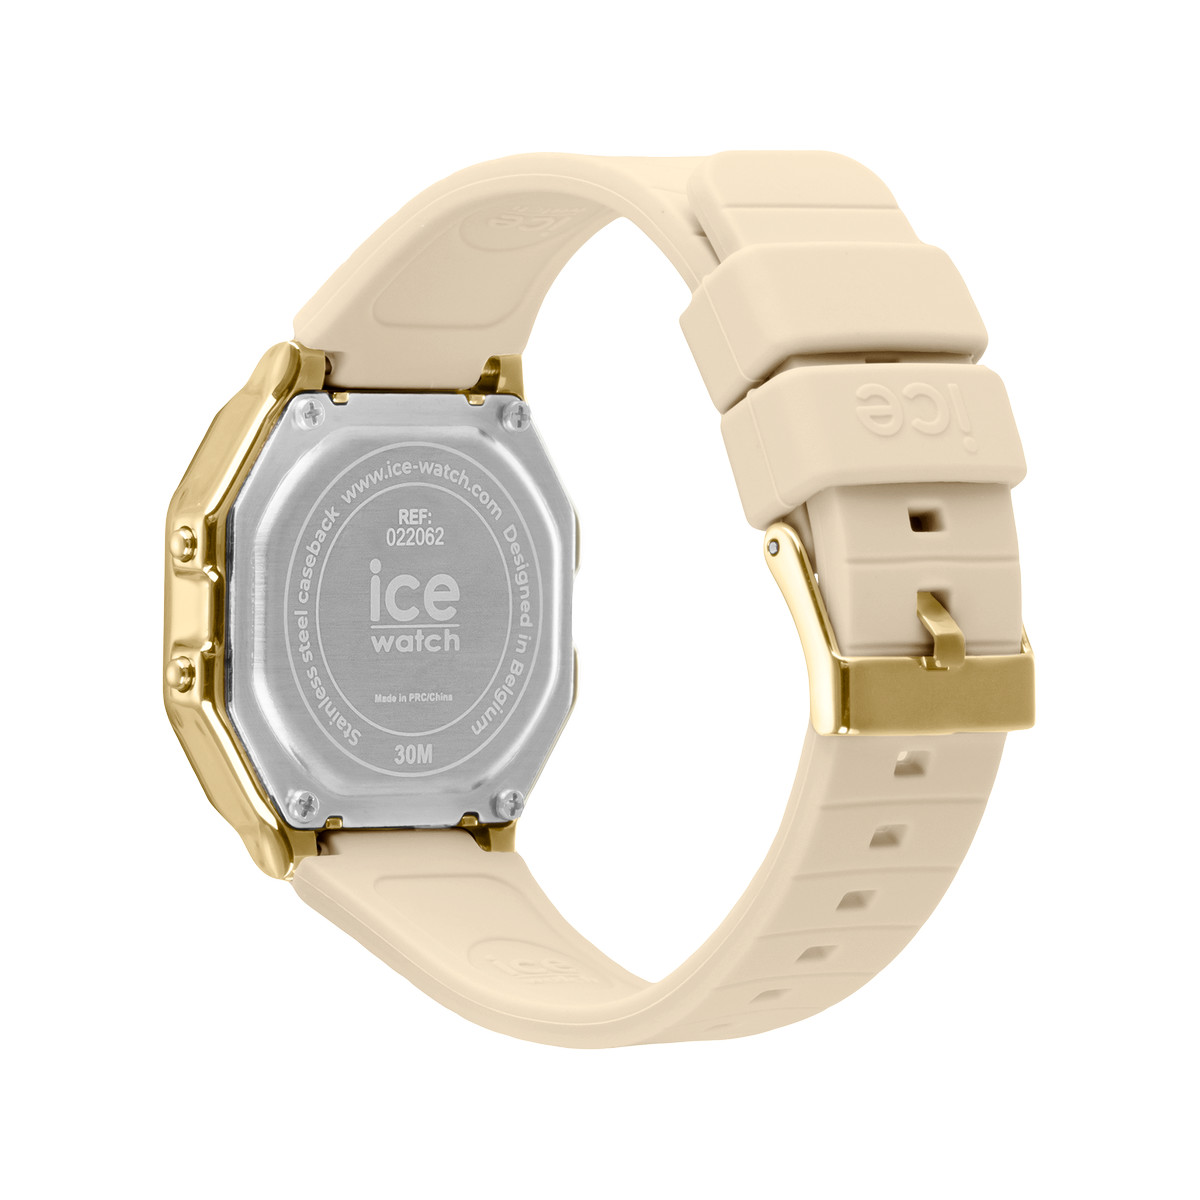 Montre ICE WATCH ice digit retro femme bracelet silicone beige - vue 3